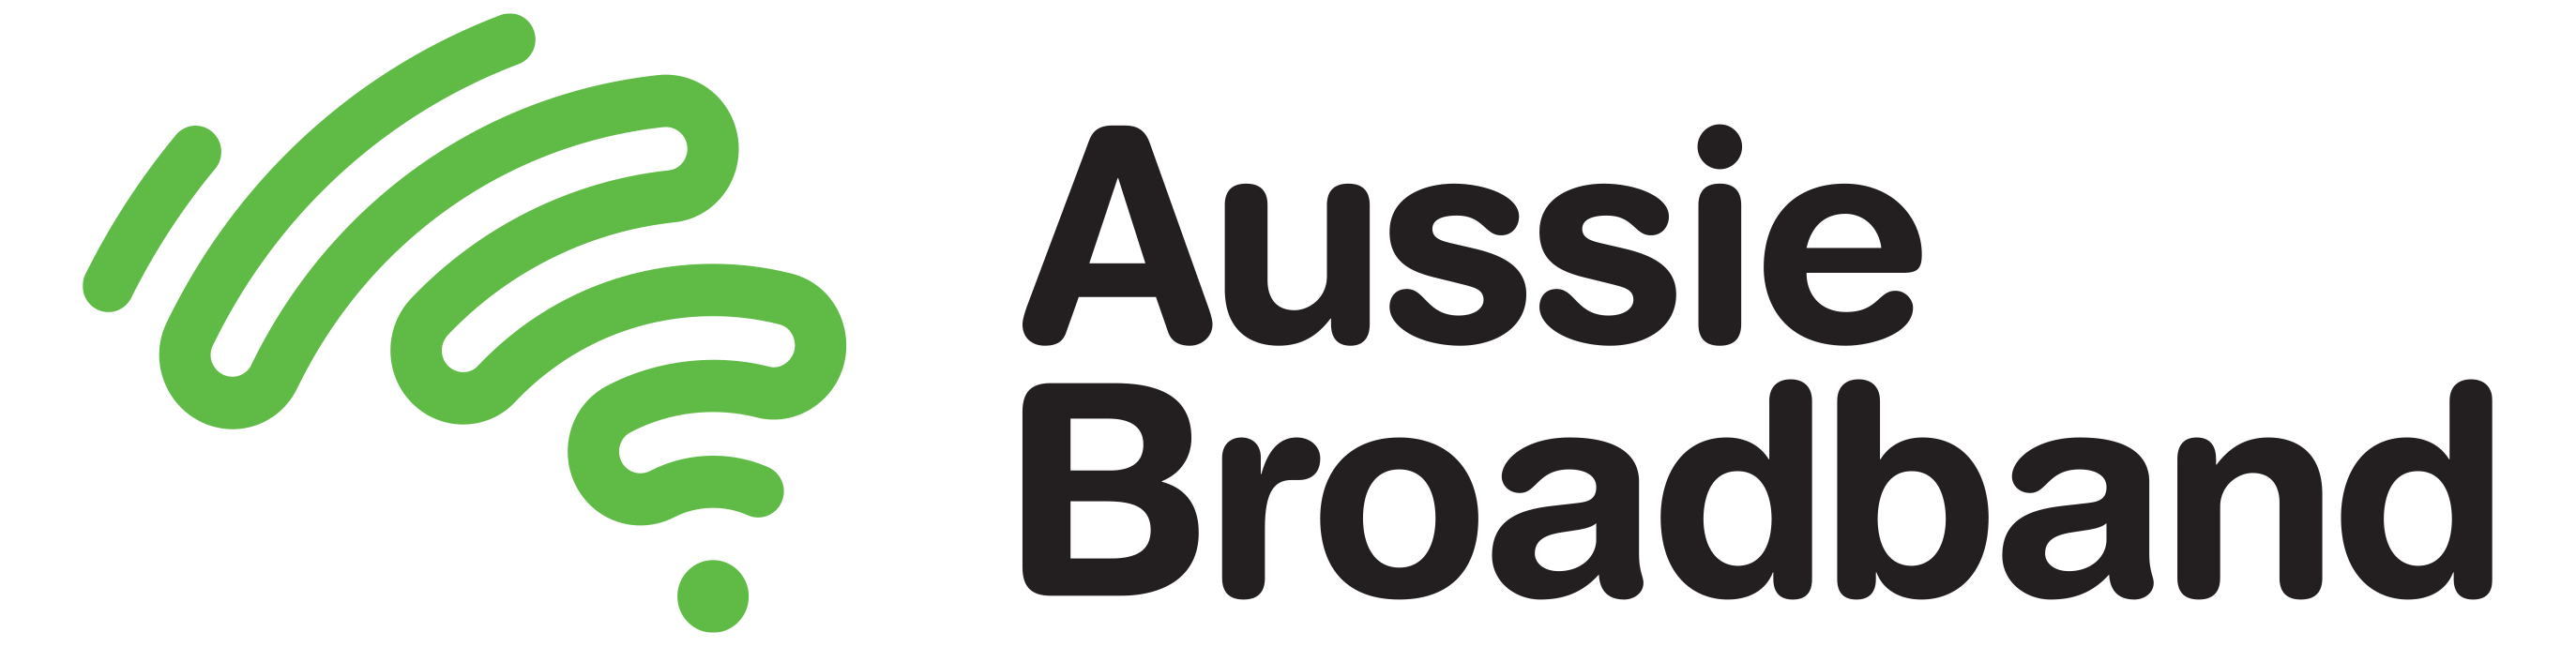 Aussie Broadband Limited